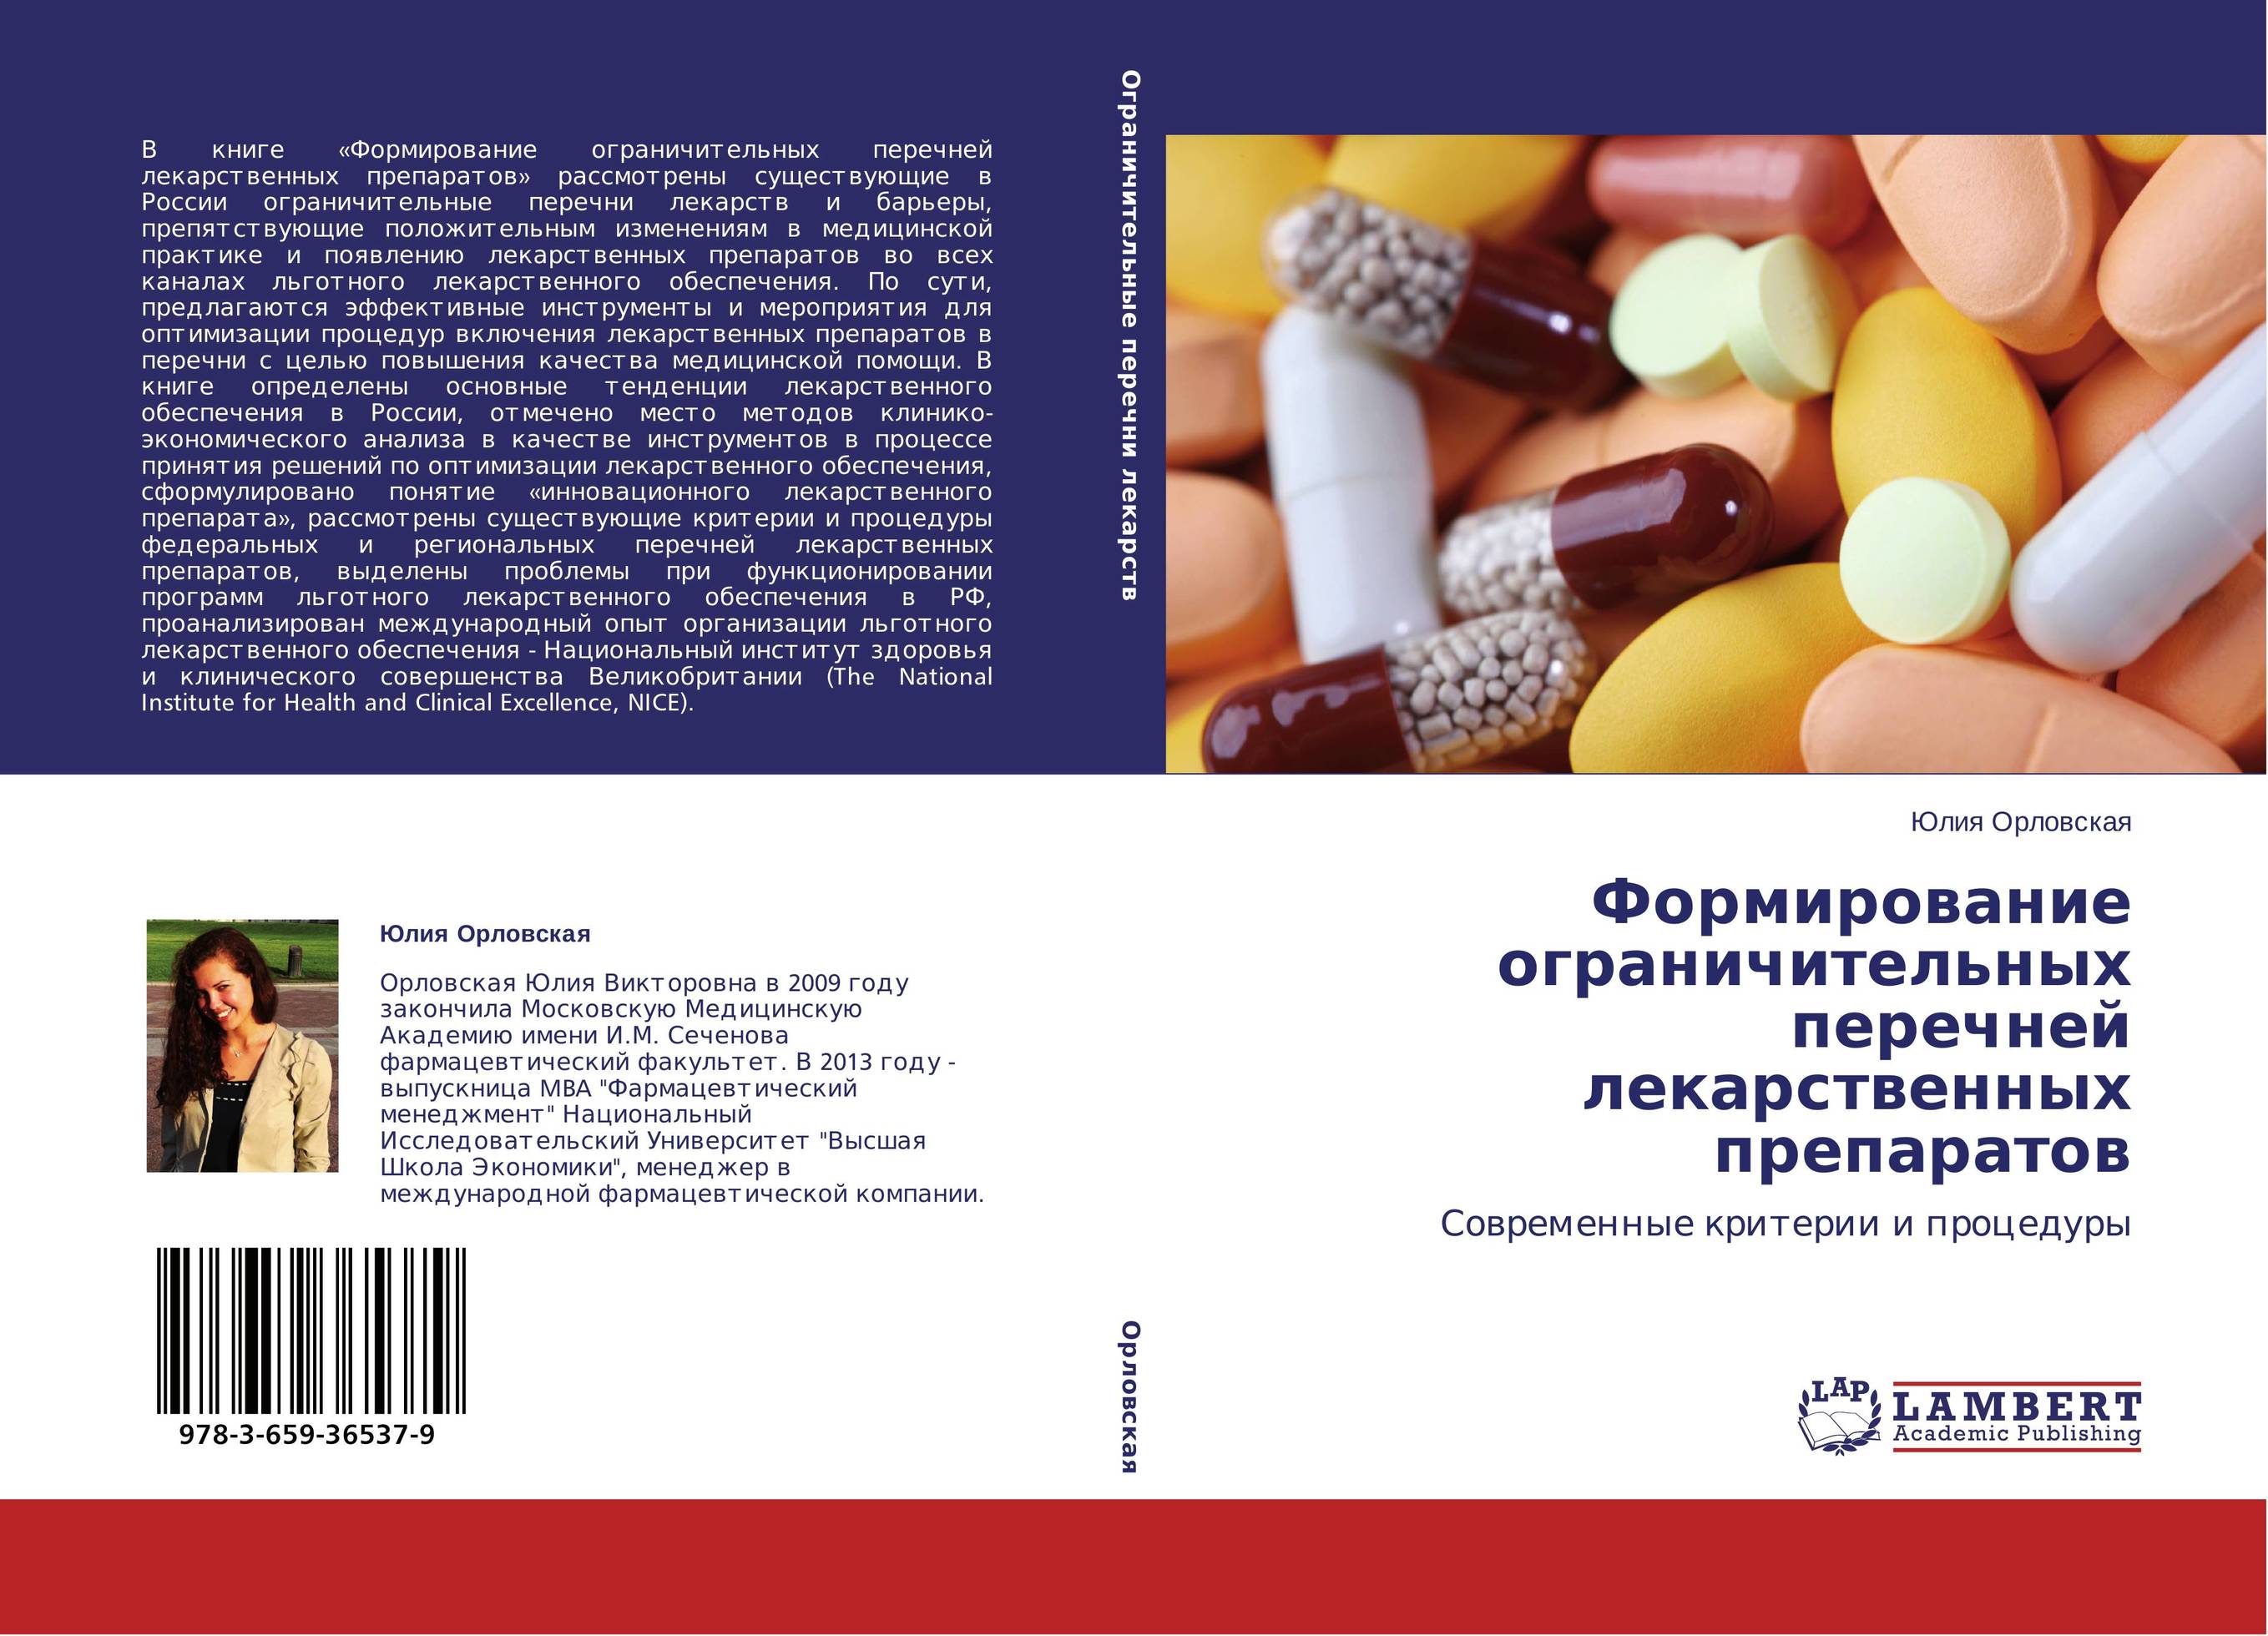 
        Формирование ограничительных перечней лекарственных препаратов. Современные критерии и процедуры.
      